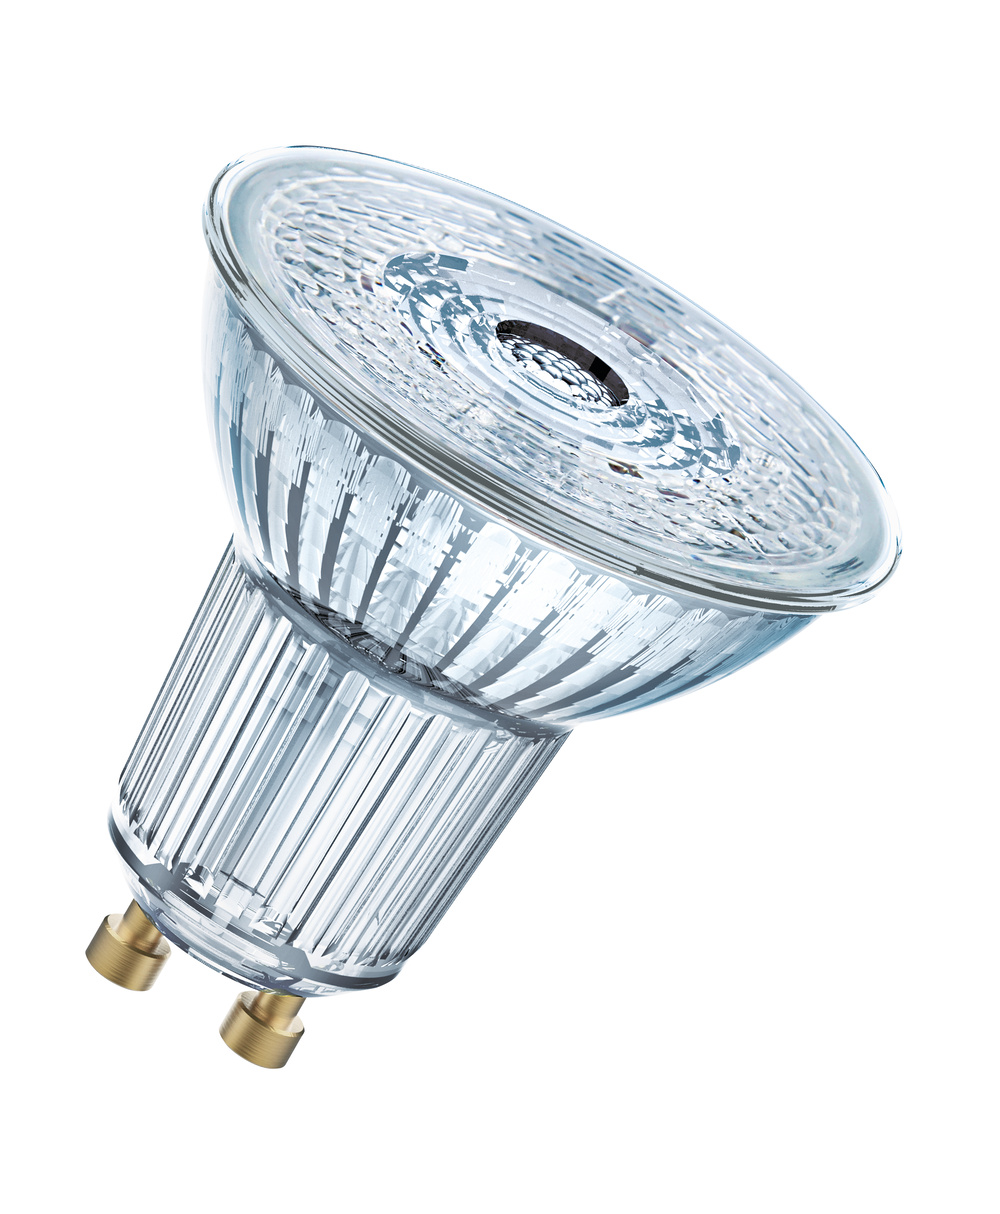 Ledvance LED lamp LED PAR16 DIM S 6W 930 GU10 – 4099854059032 – replacement for 50 W